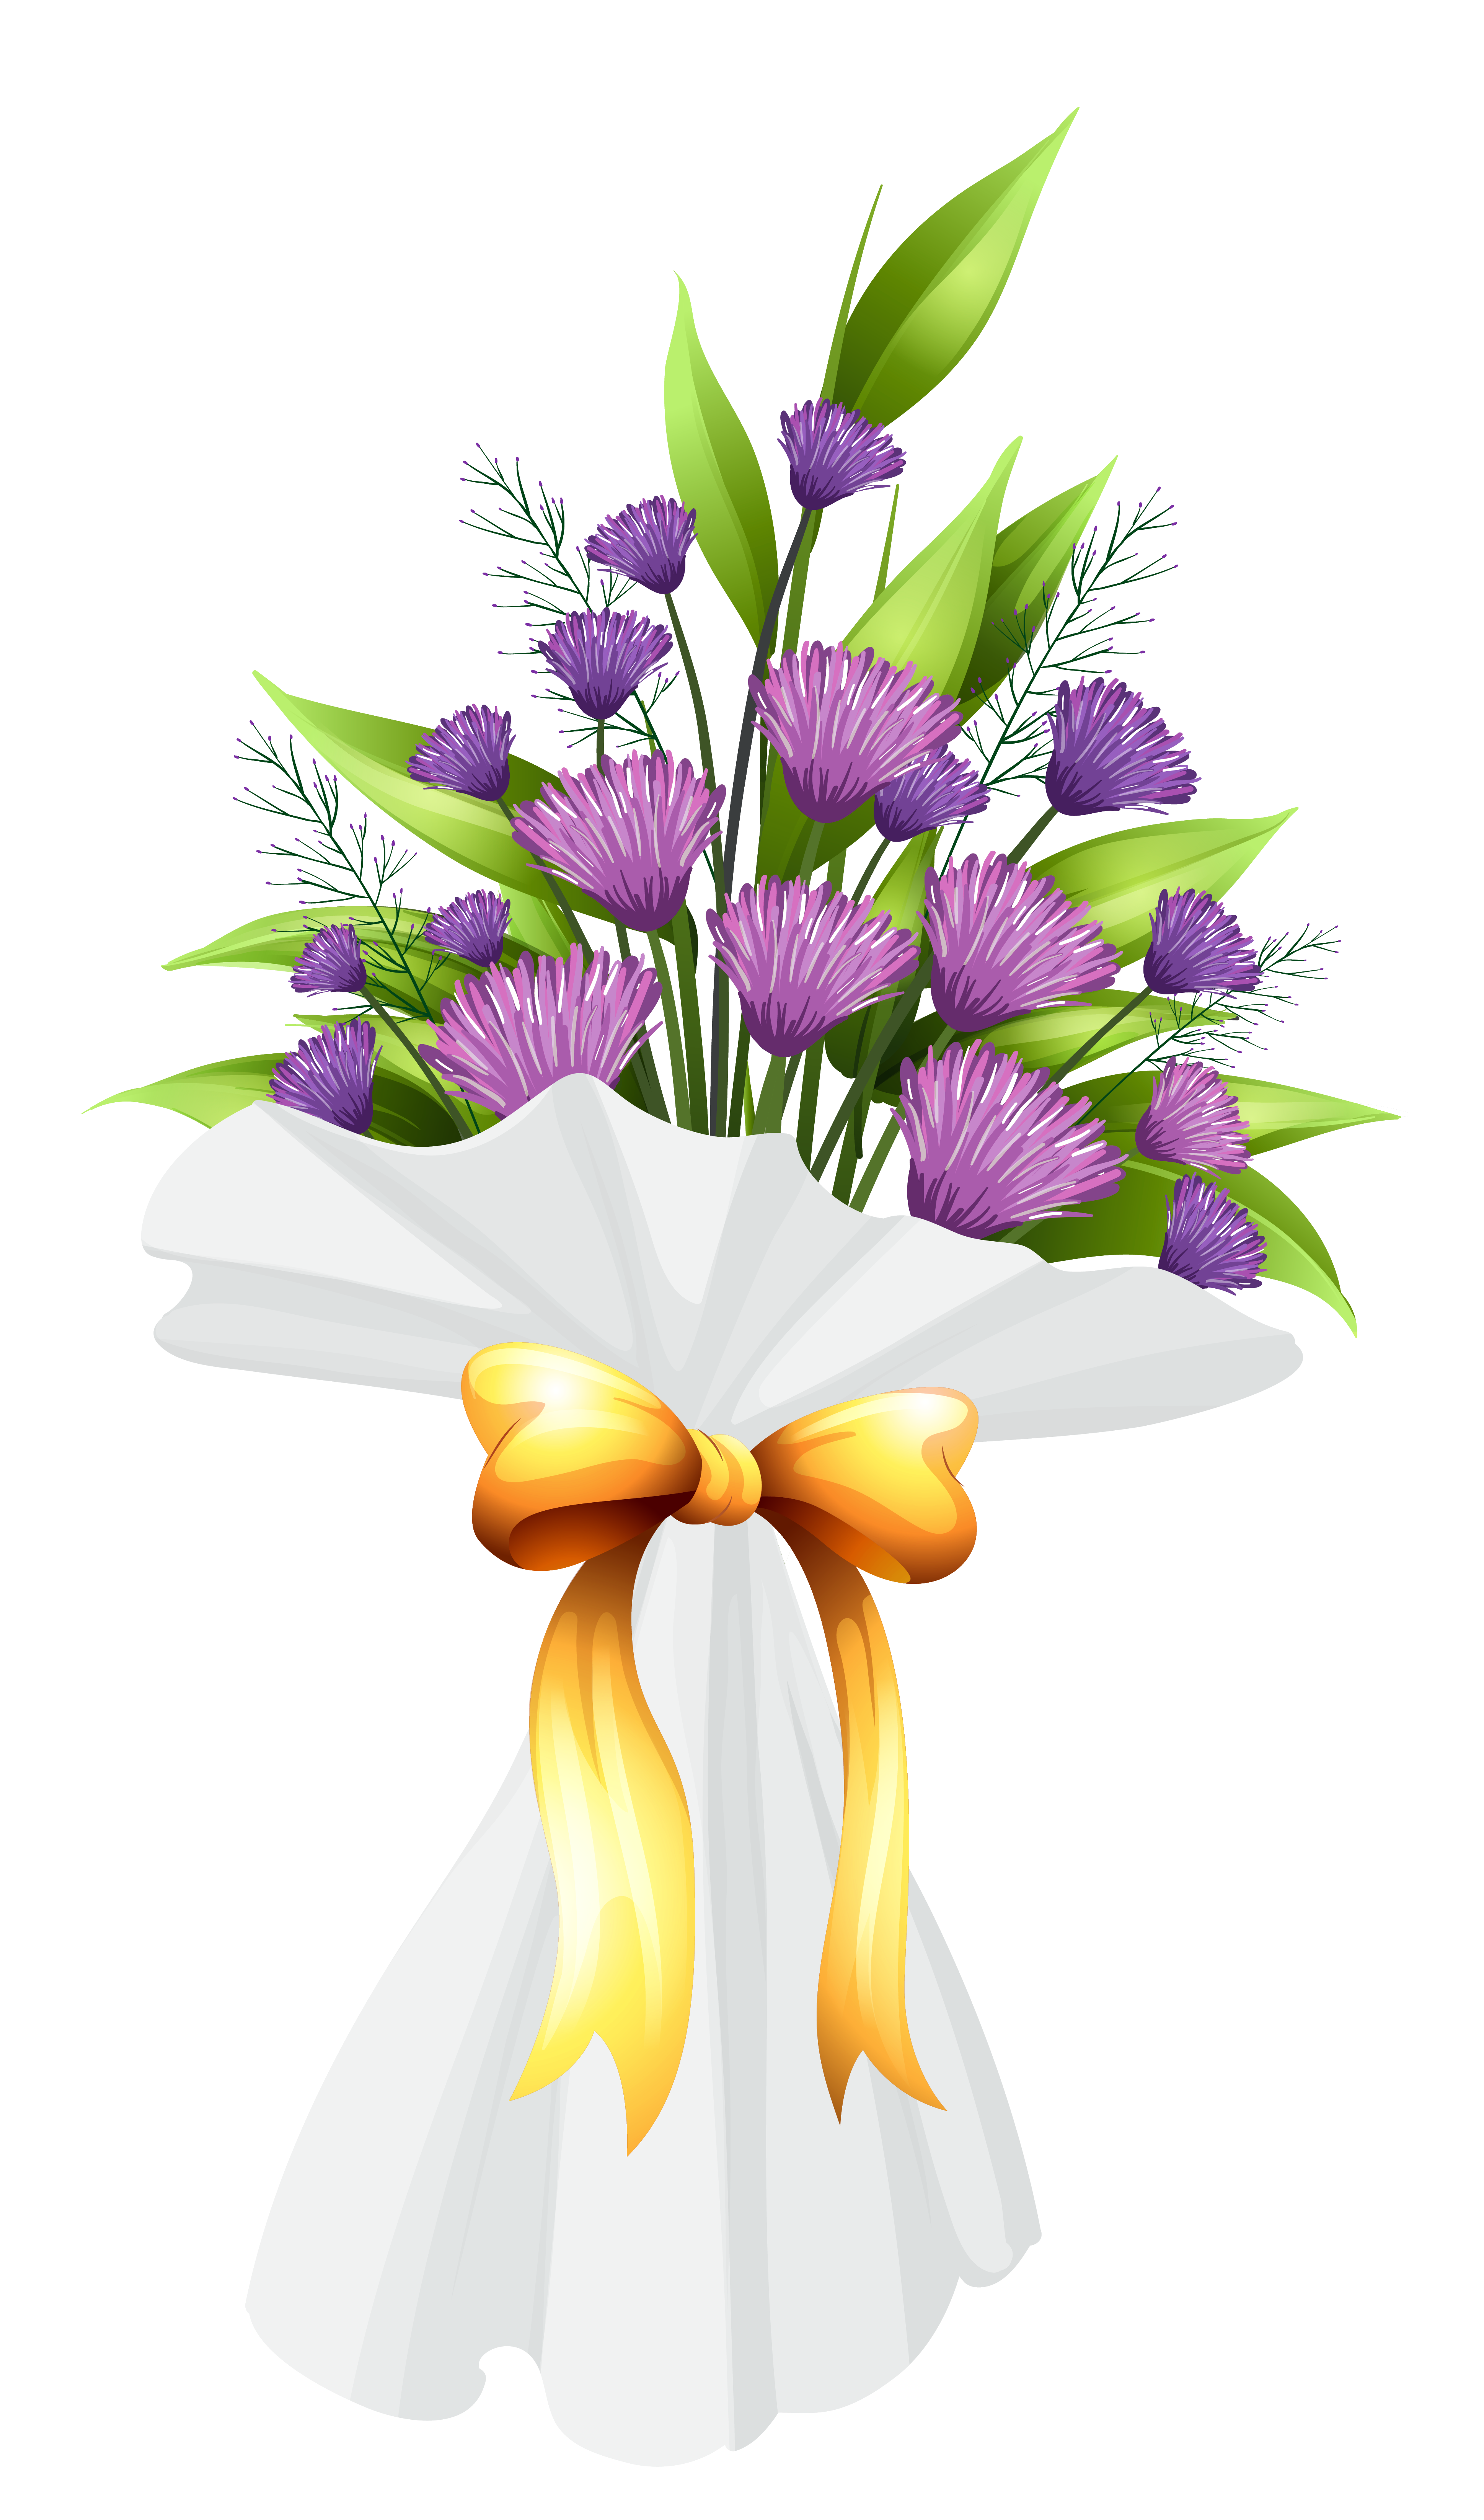 Hands clipart bouquet. Purple flowers png image